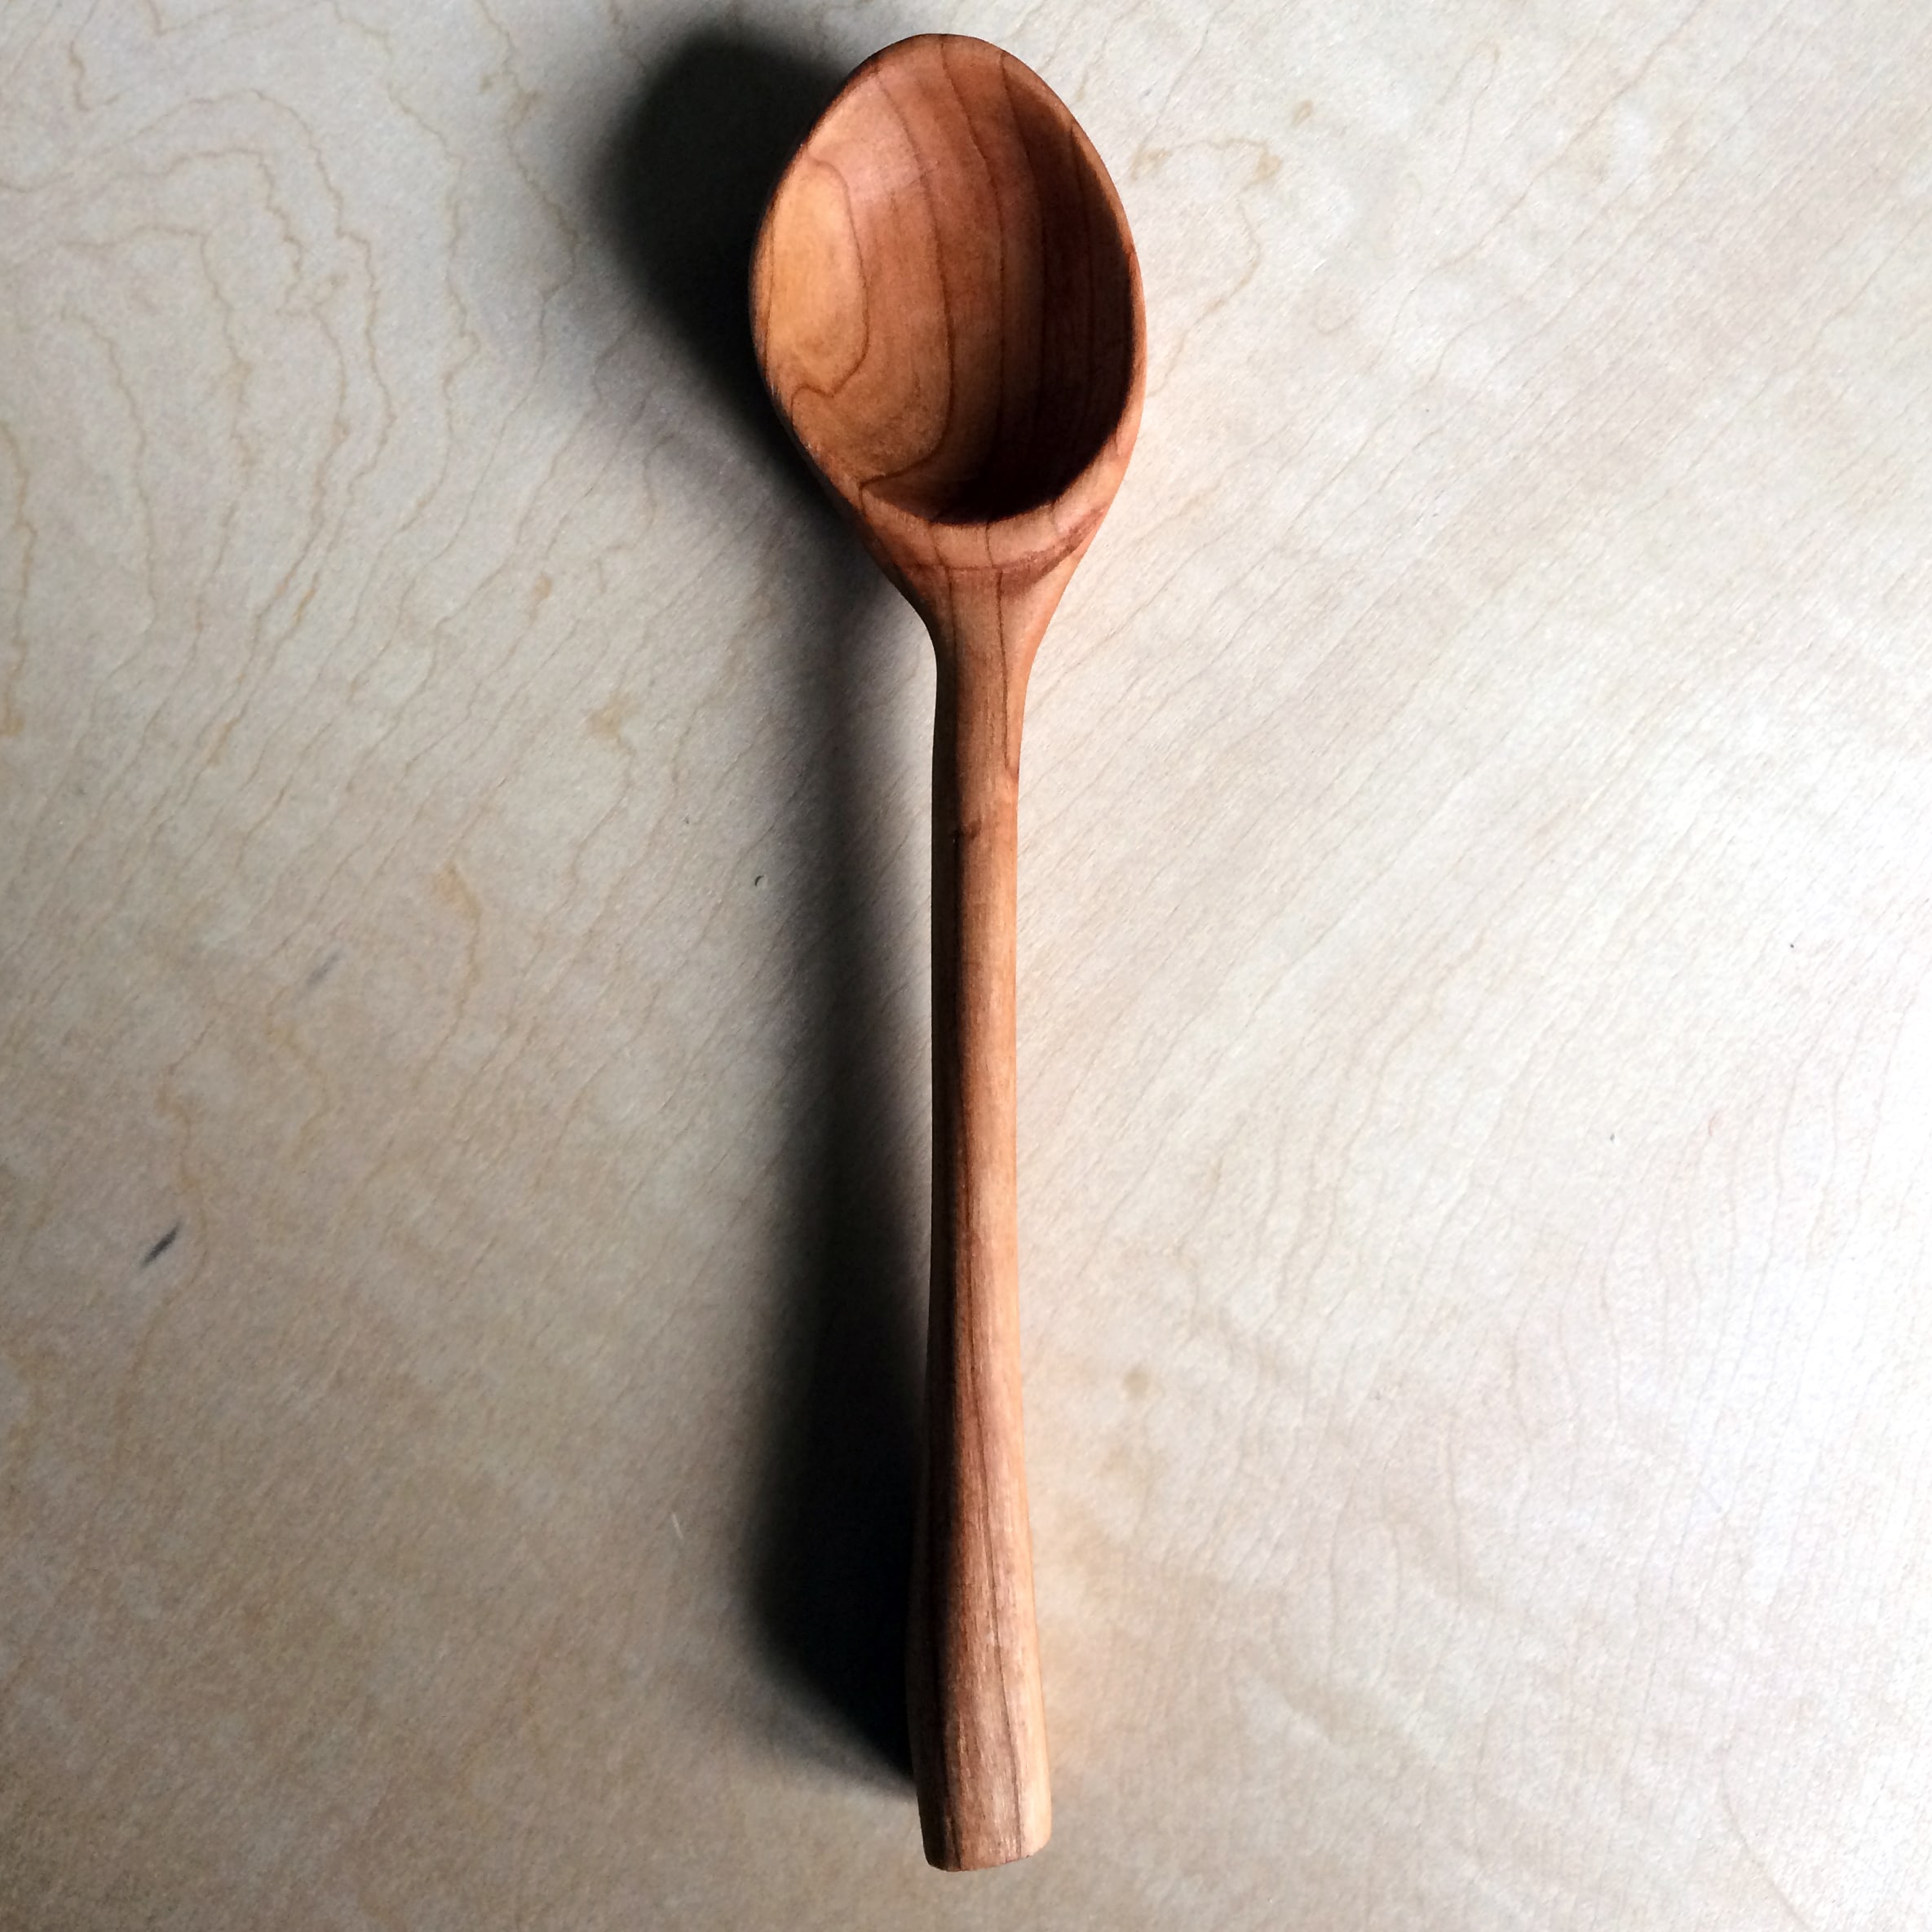 Spoon by Brandon Sweet